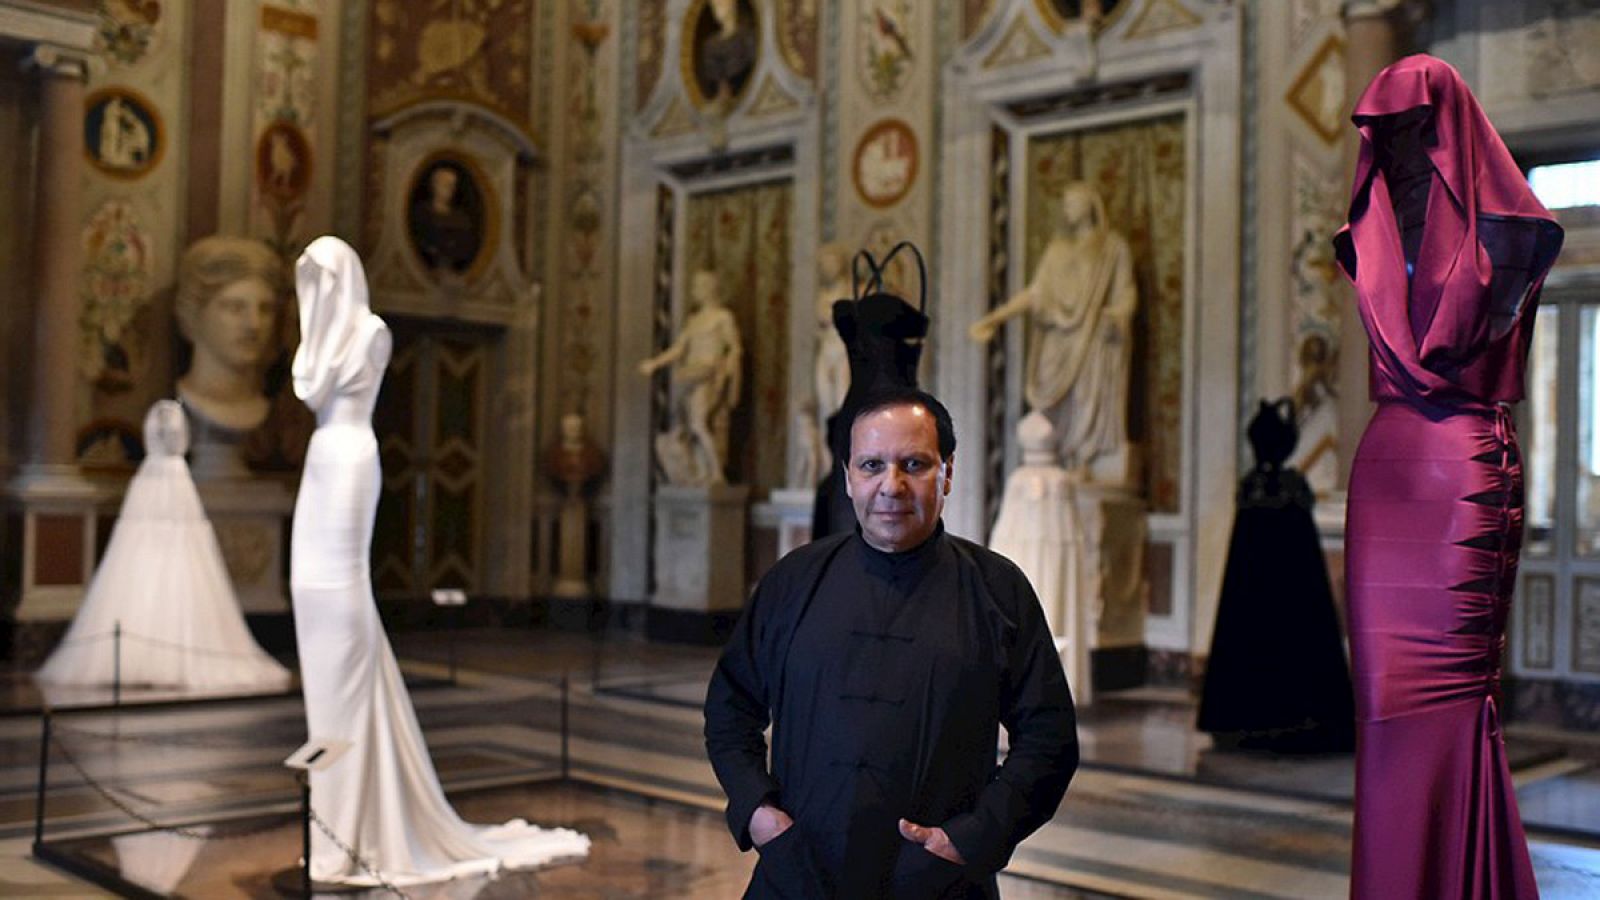 El diseñador Azzedine Alaïa posa junto a sus vestidos en la galería Borghese.